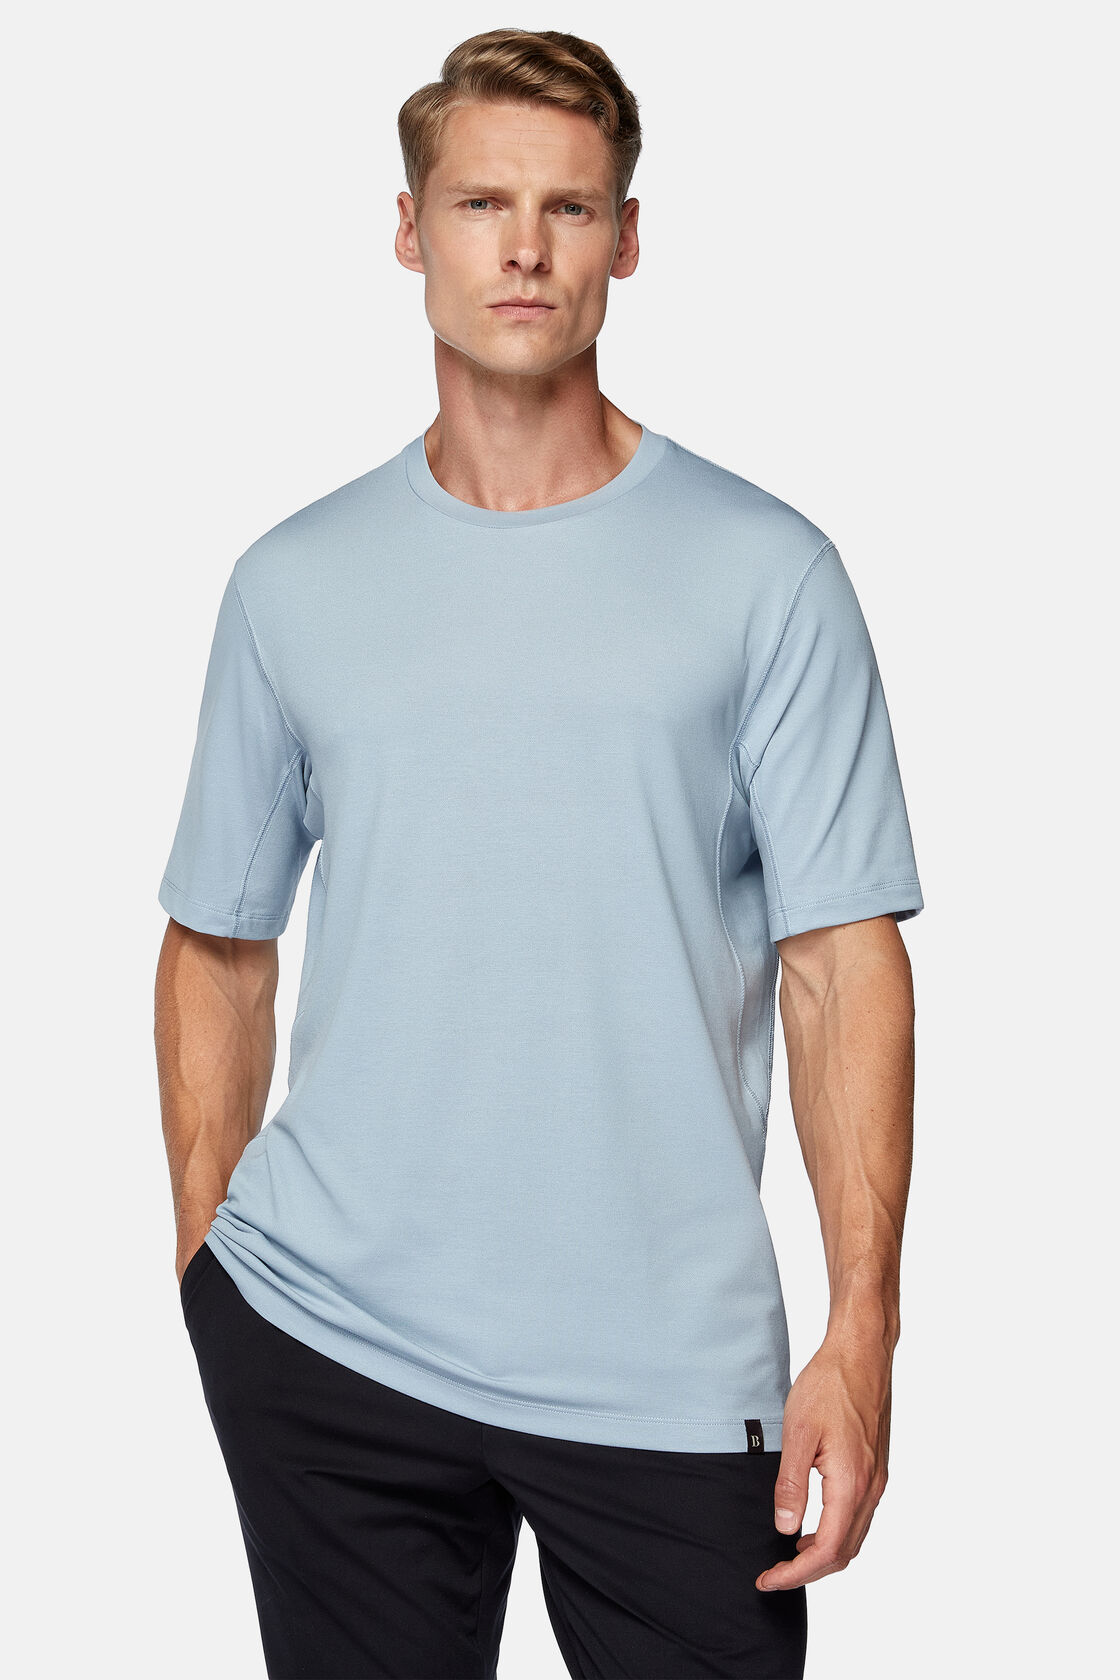 Camiseta de piqué de alto rendimiento, Azul claro, hi-res